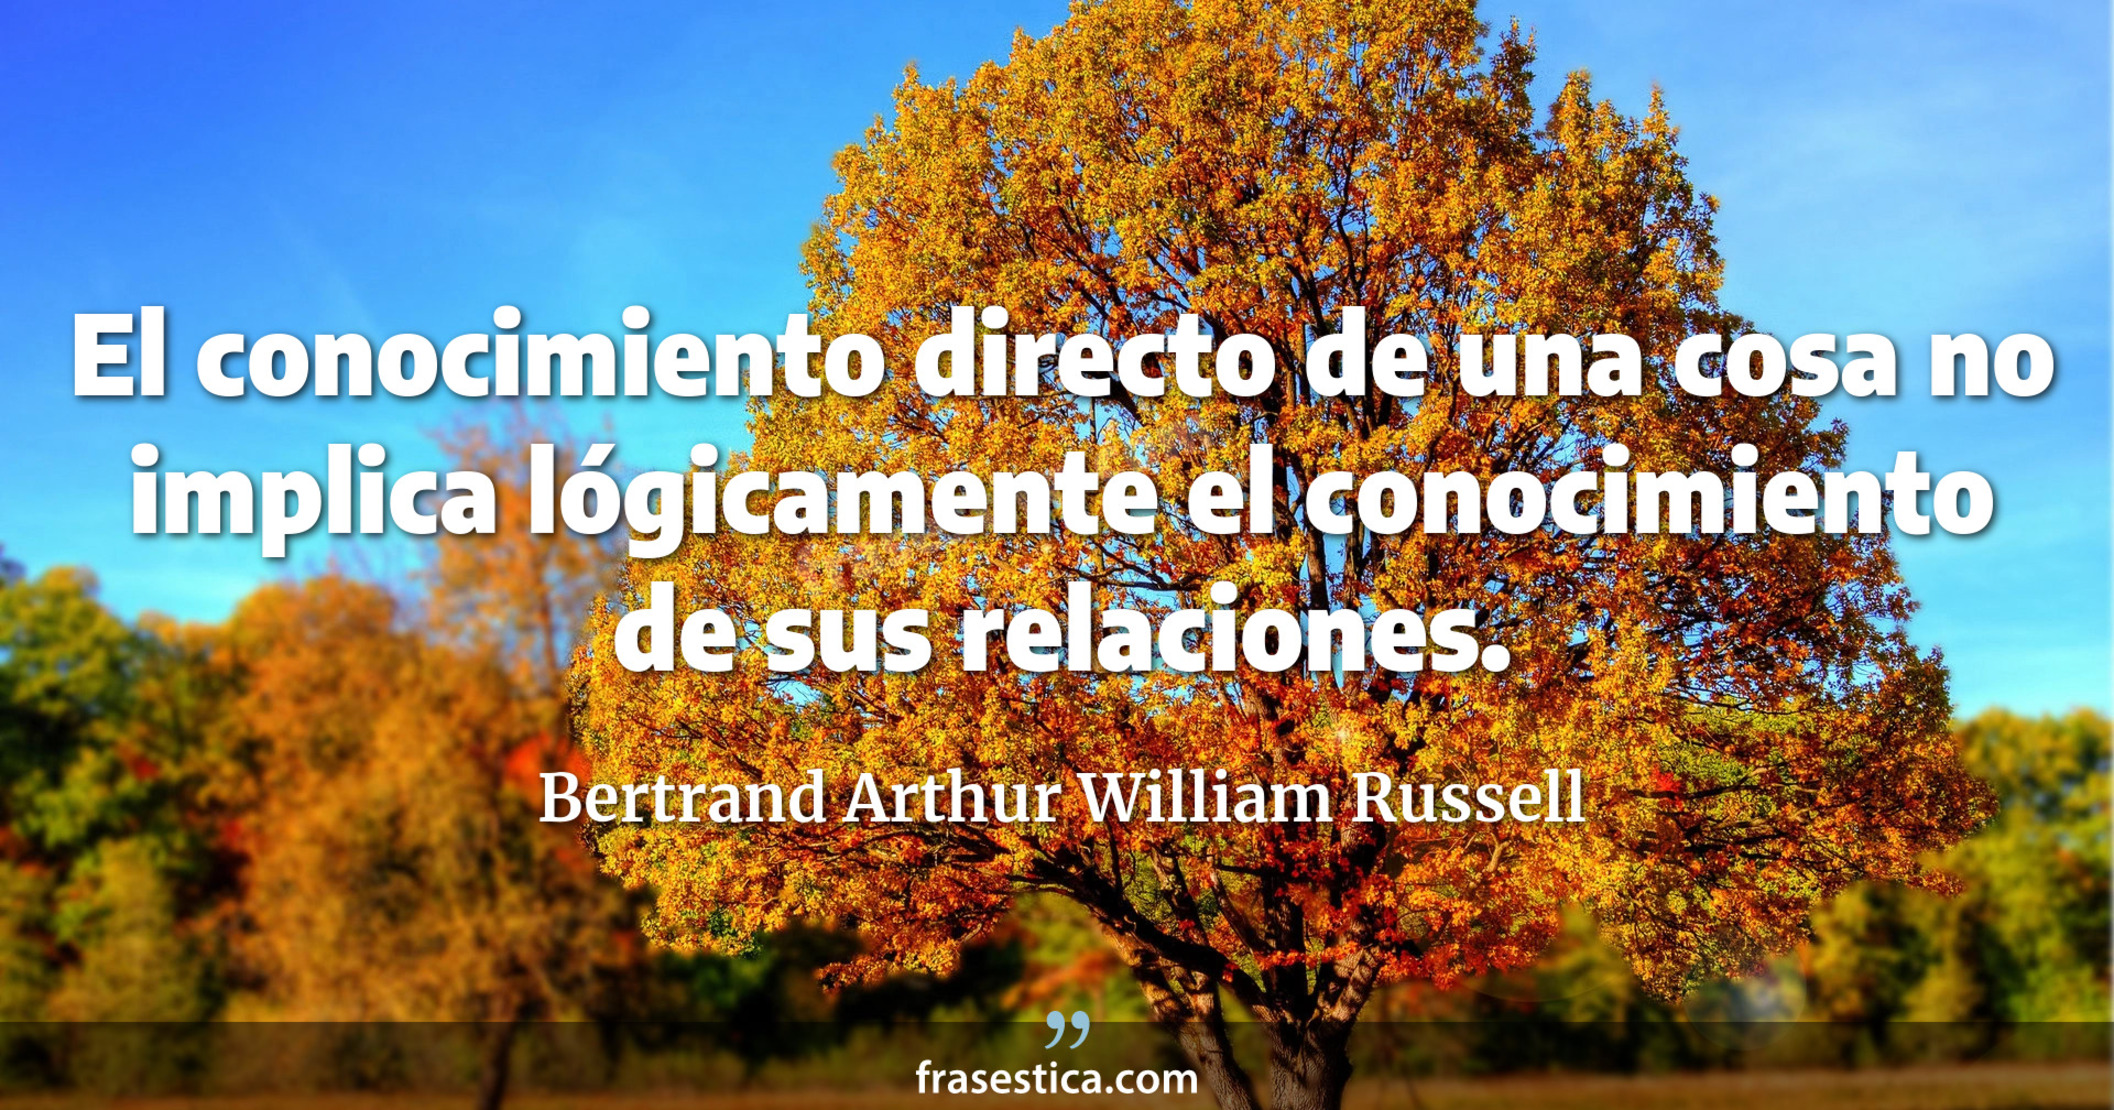 El conocimiento directo de una cosa no implica lógicamente el conocimiento de sus relaciones. - Bertrand Arthur William Russell